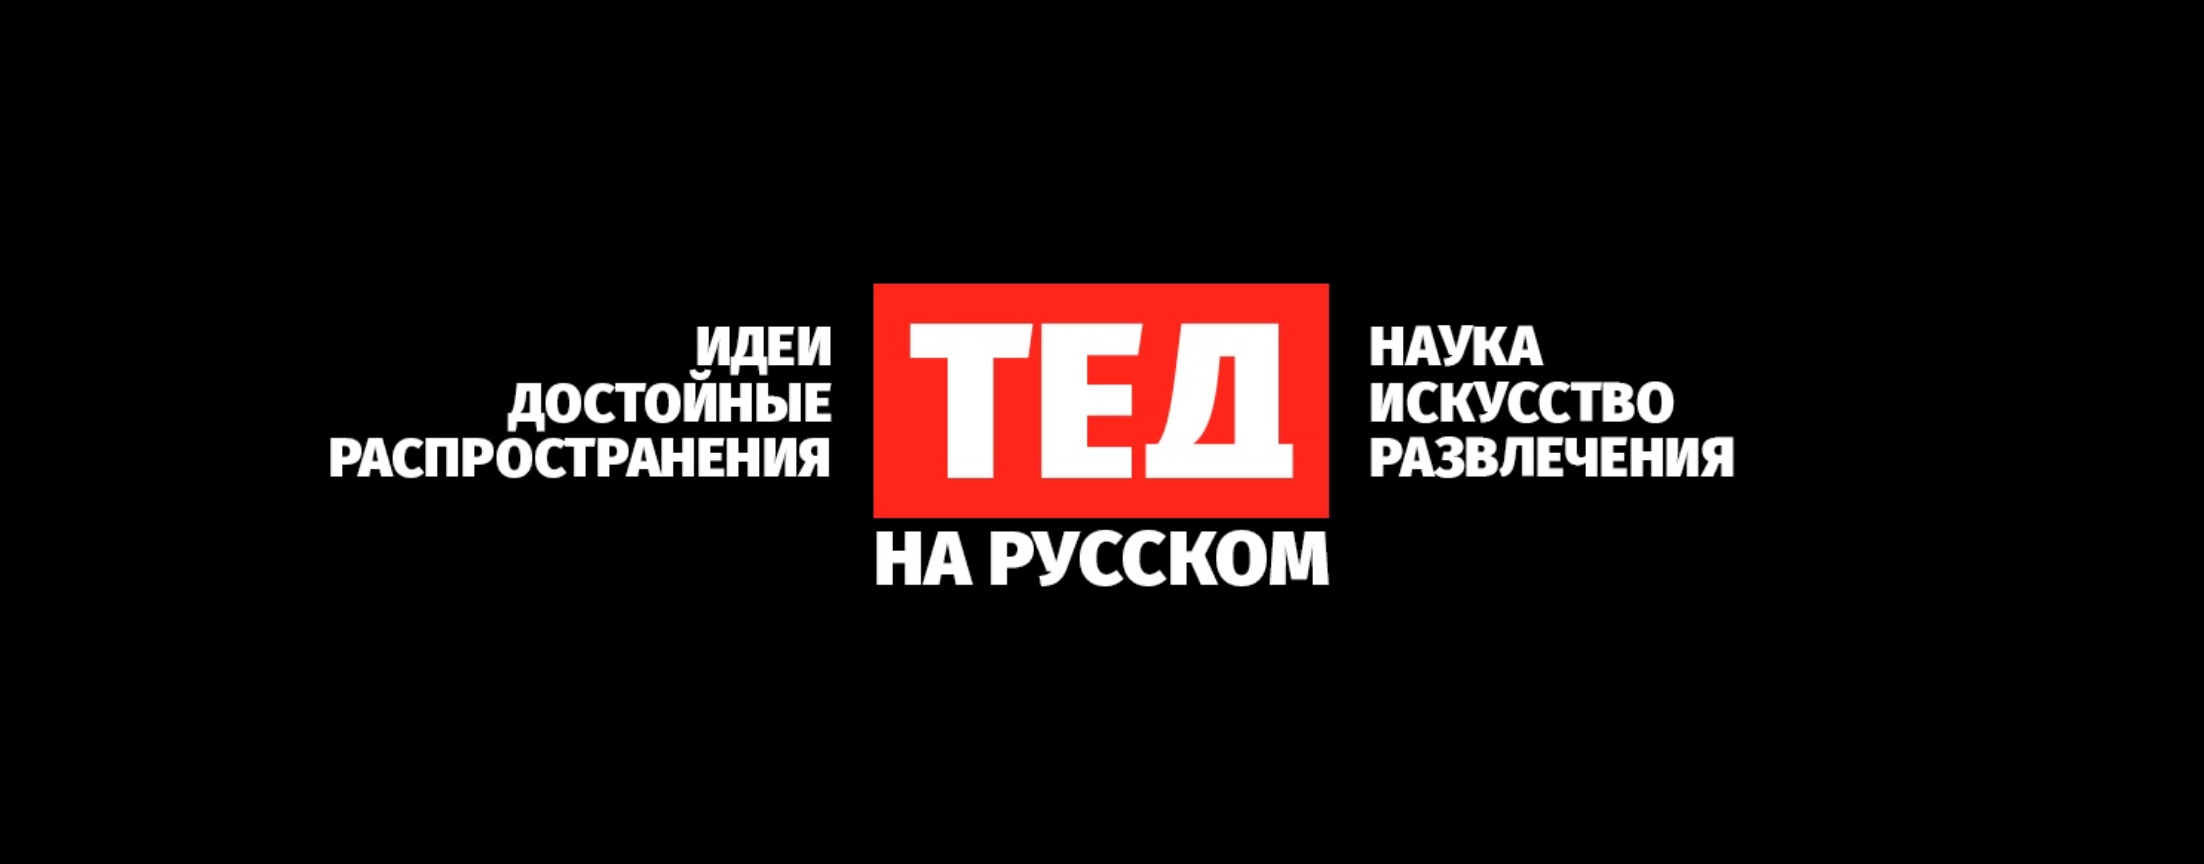 ТЕД на русском